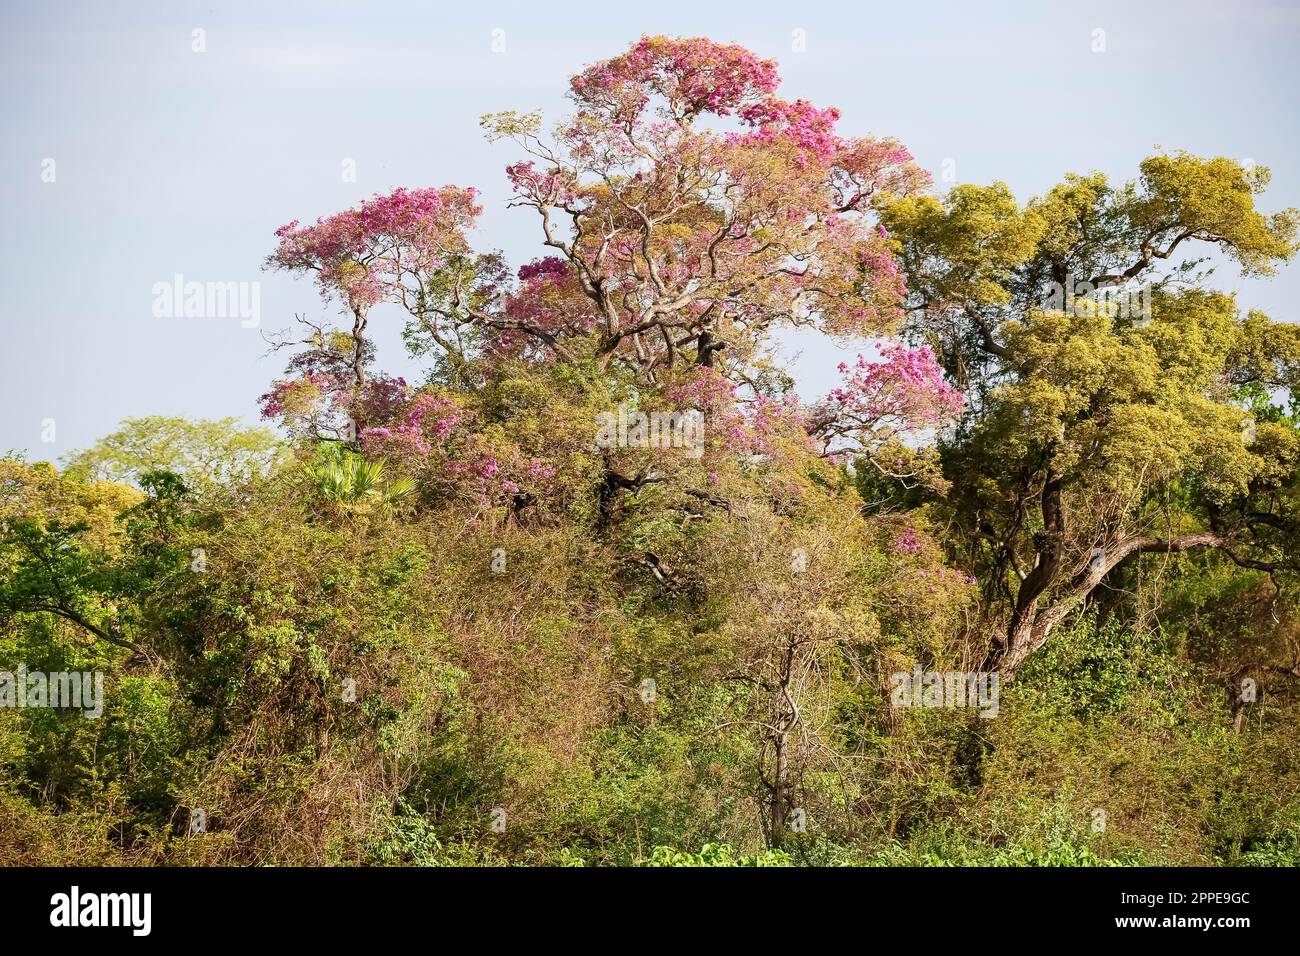 Pink Piuva Tree plein de fleurs dans une forêt de Cerrado, Pantanal Wetlands, Mato Grosso, Brésil Banque D'Images